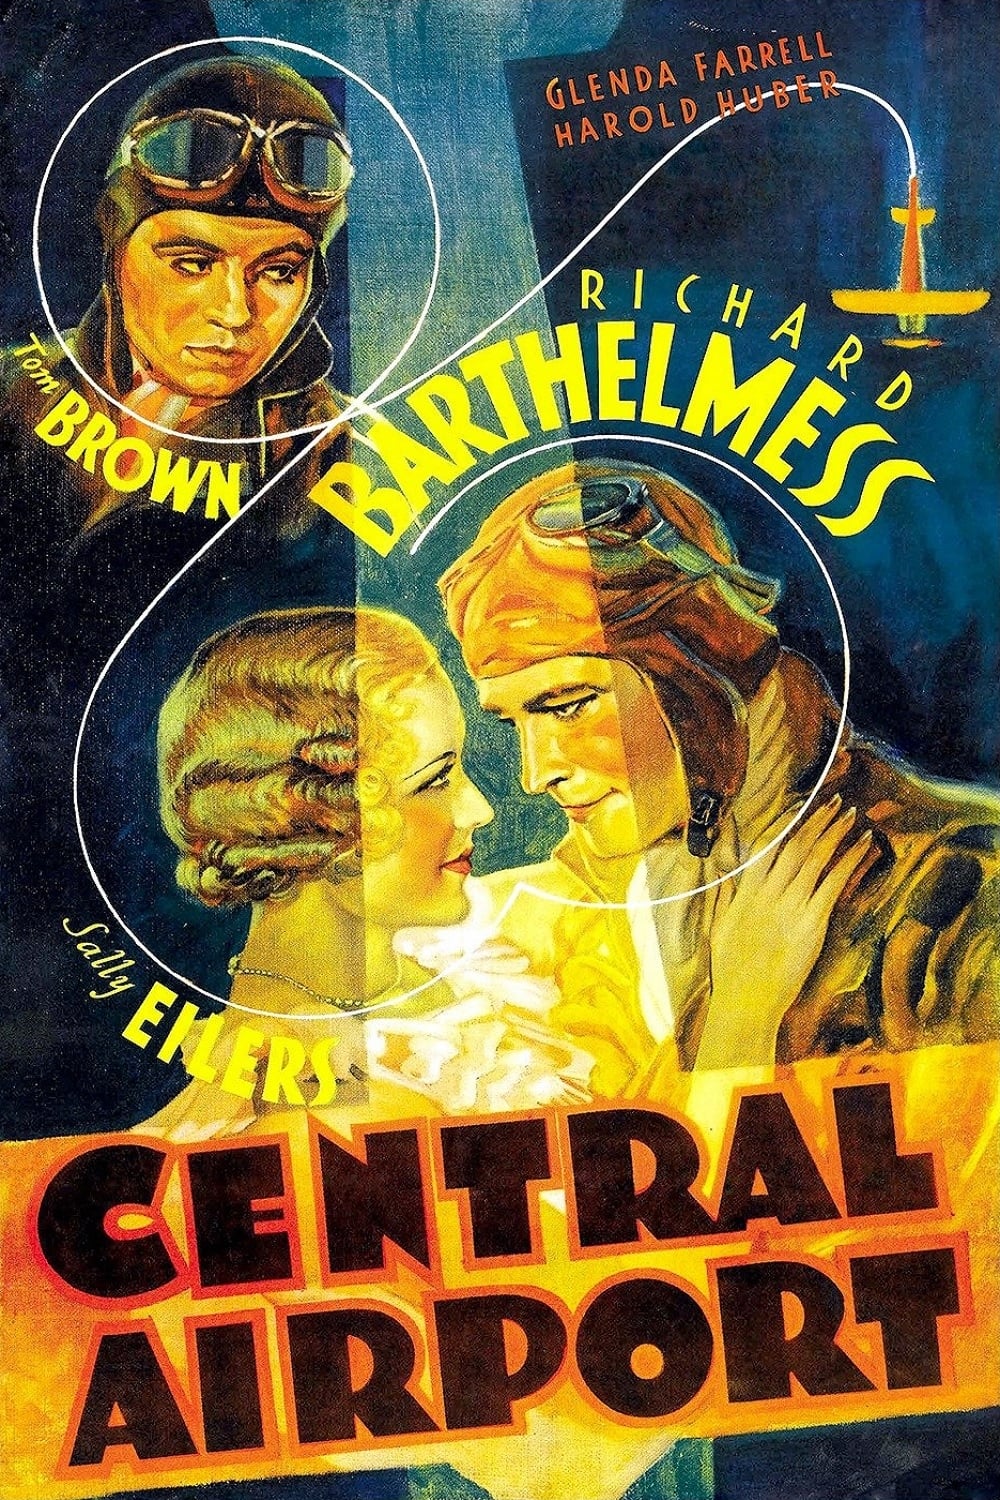 Aeropuerto Central (1933)